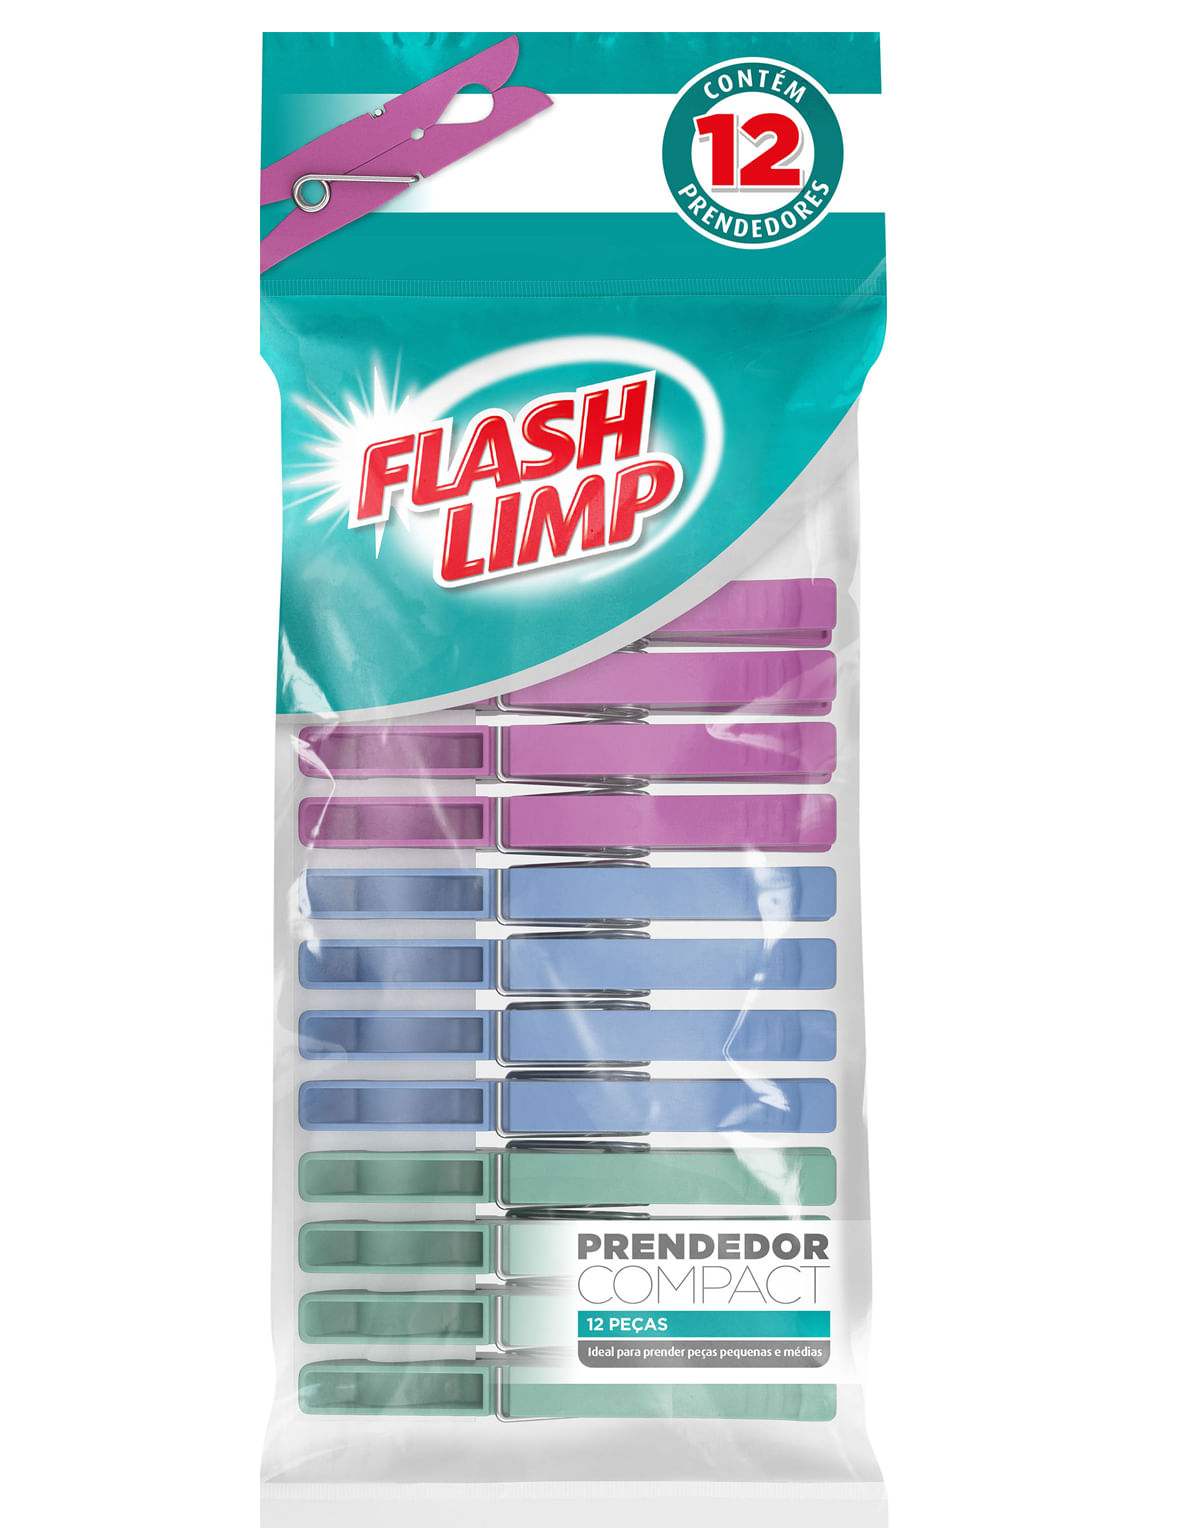 Conjunto 12 Prendedores Compact Flash Limp